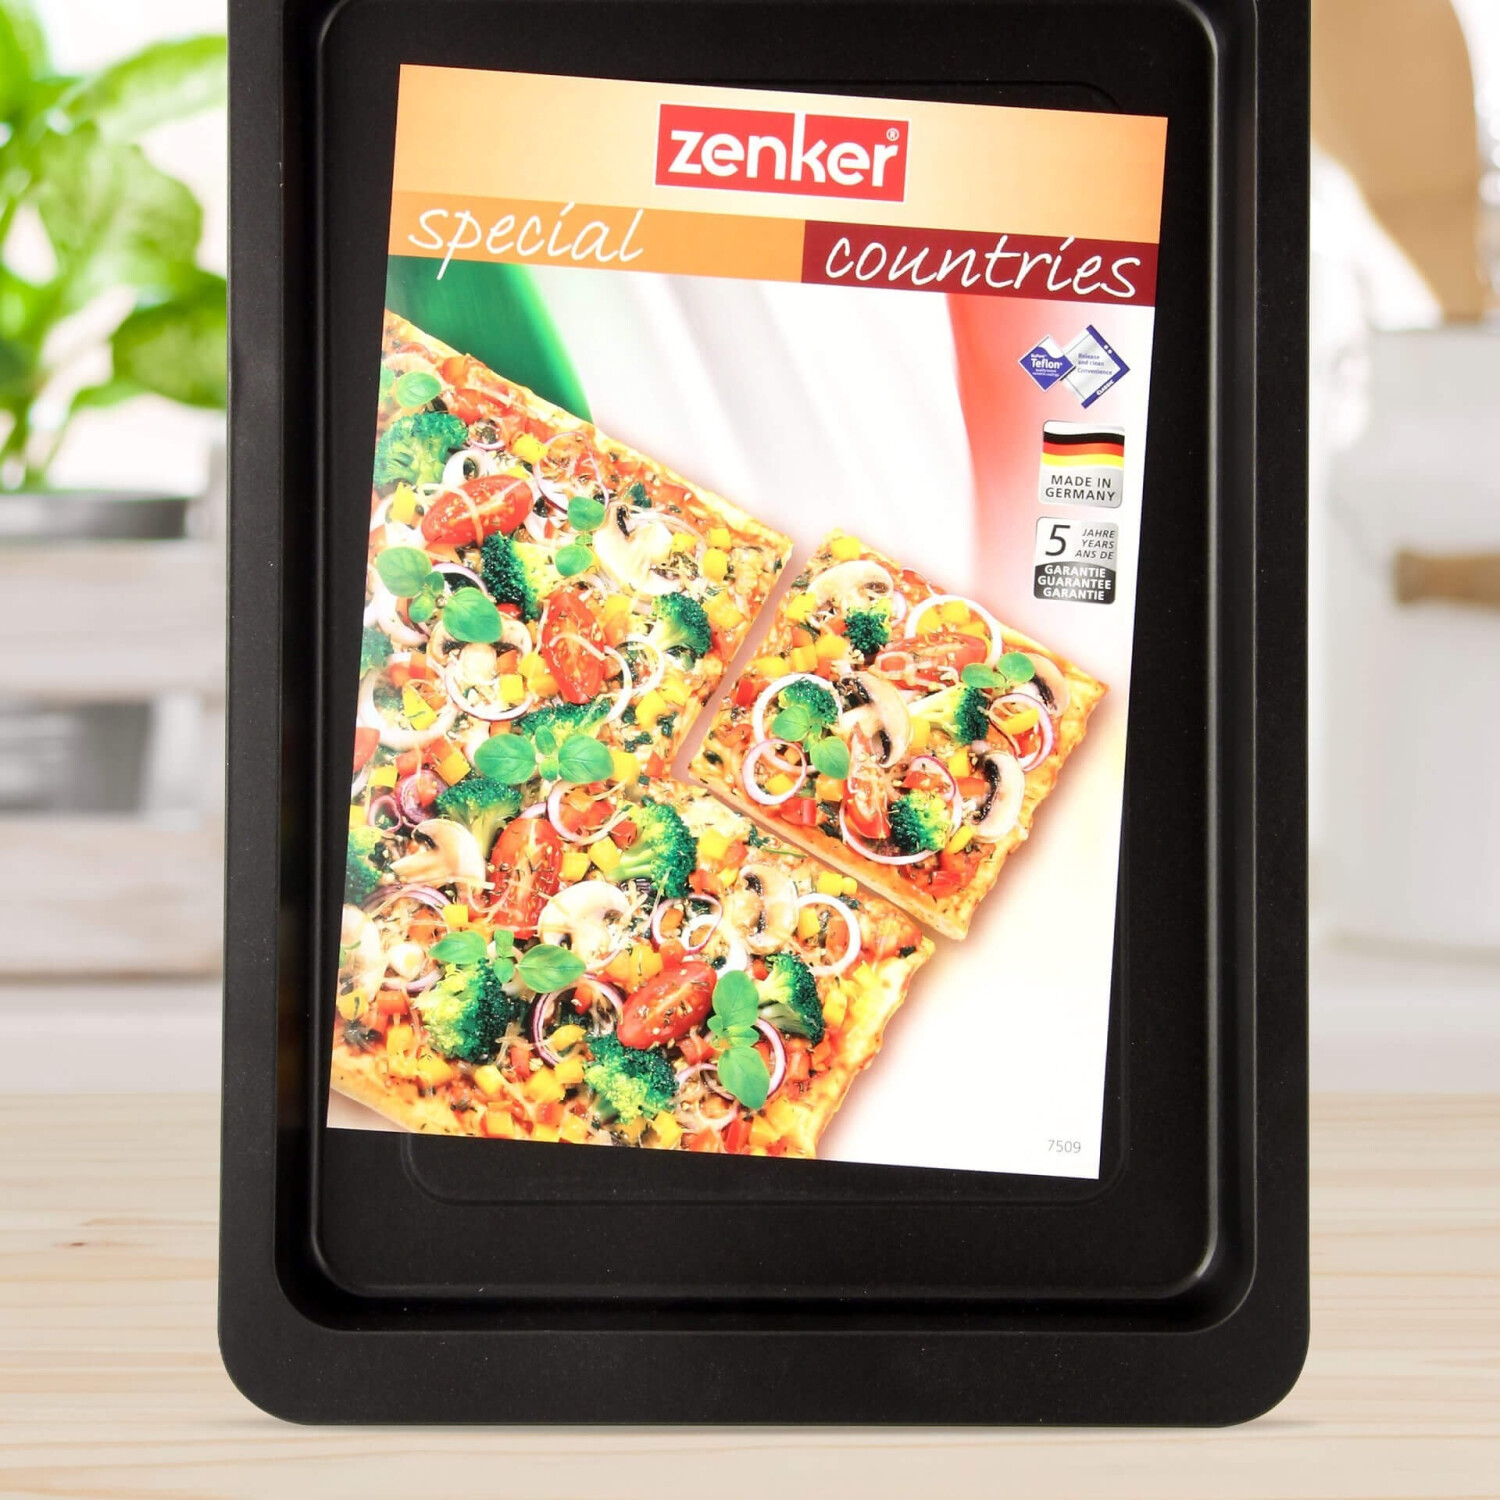 Zenker Pizzablech 9,19 29 bei Preisvergleich | € 42 cm x ab